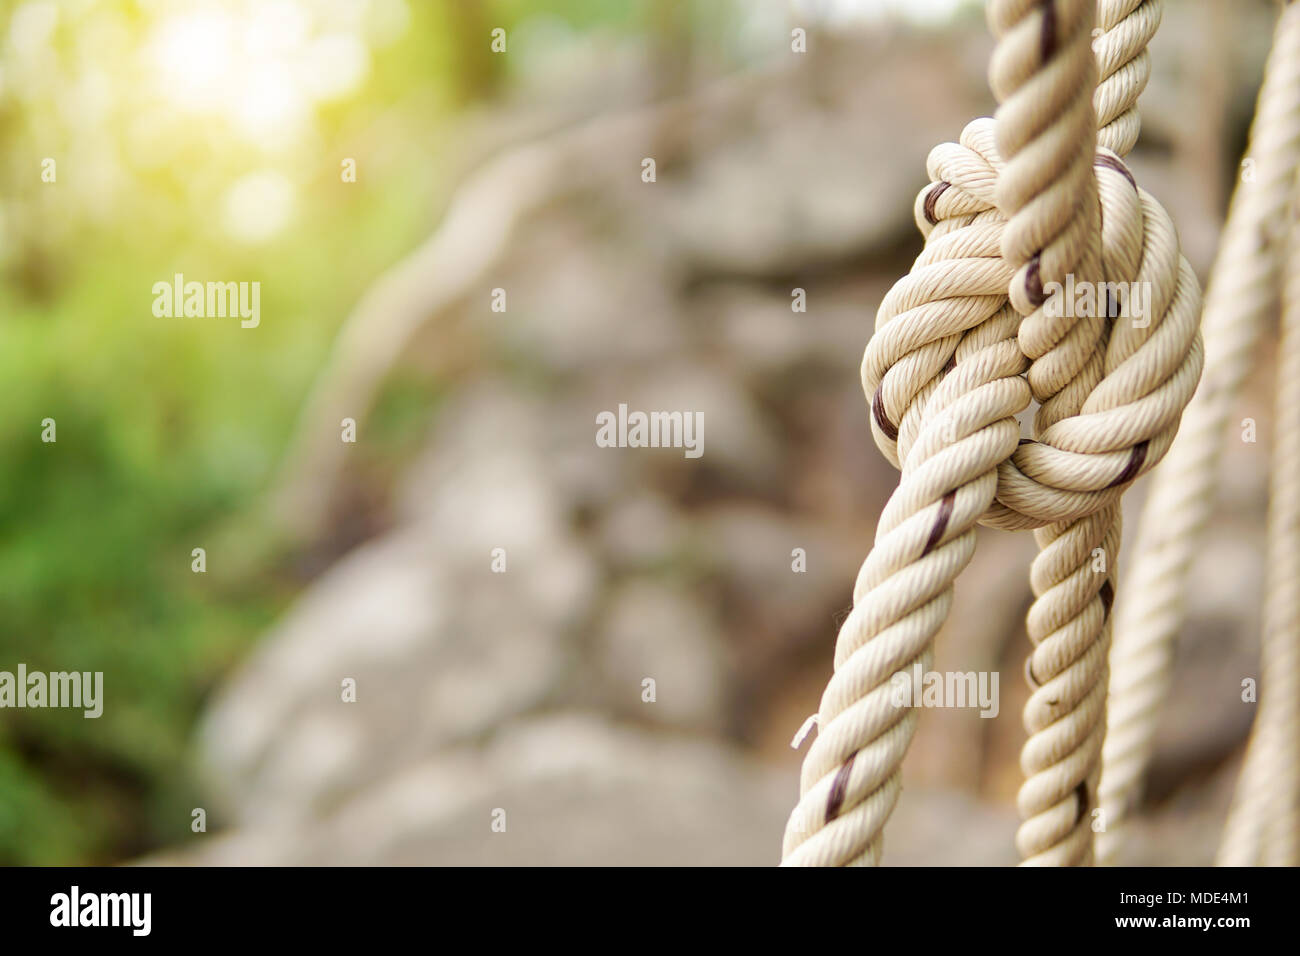 Close-up of rope knot line attachés ensemble avec un arrière-plan de pont. Corde blanche dans un noeud pour l'aventure.Corde, attachez un noeud lié à un maillage de poteau de métal Banque D'Images